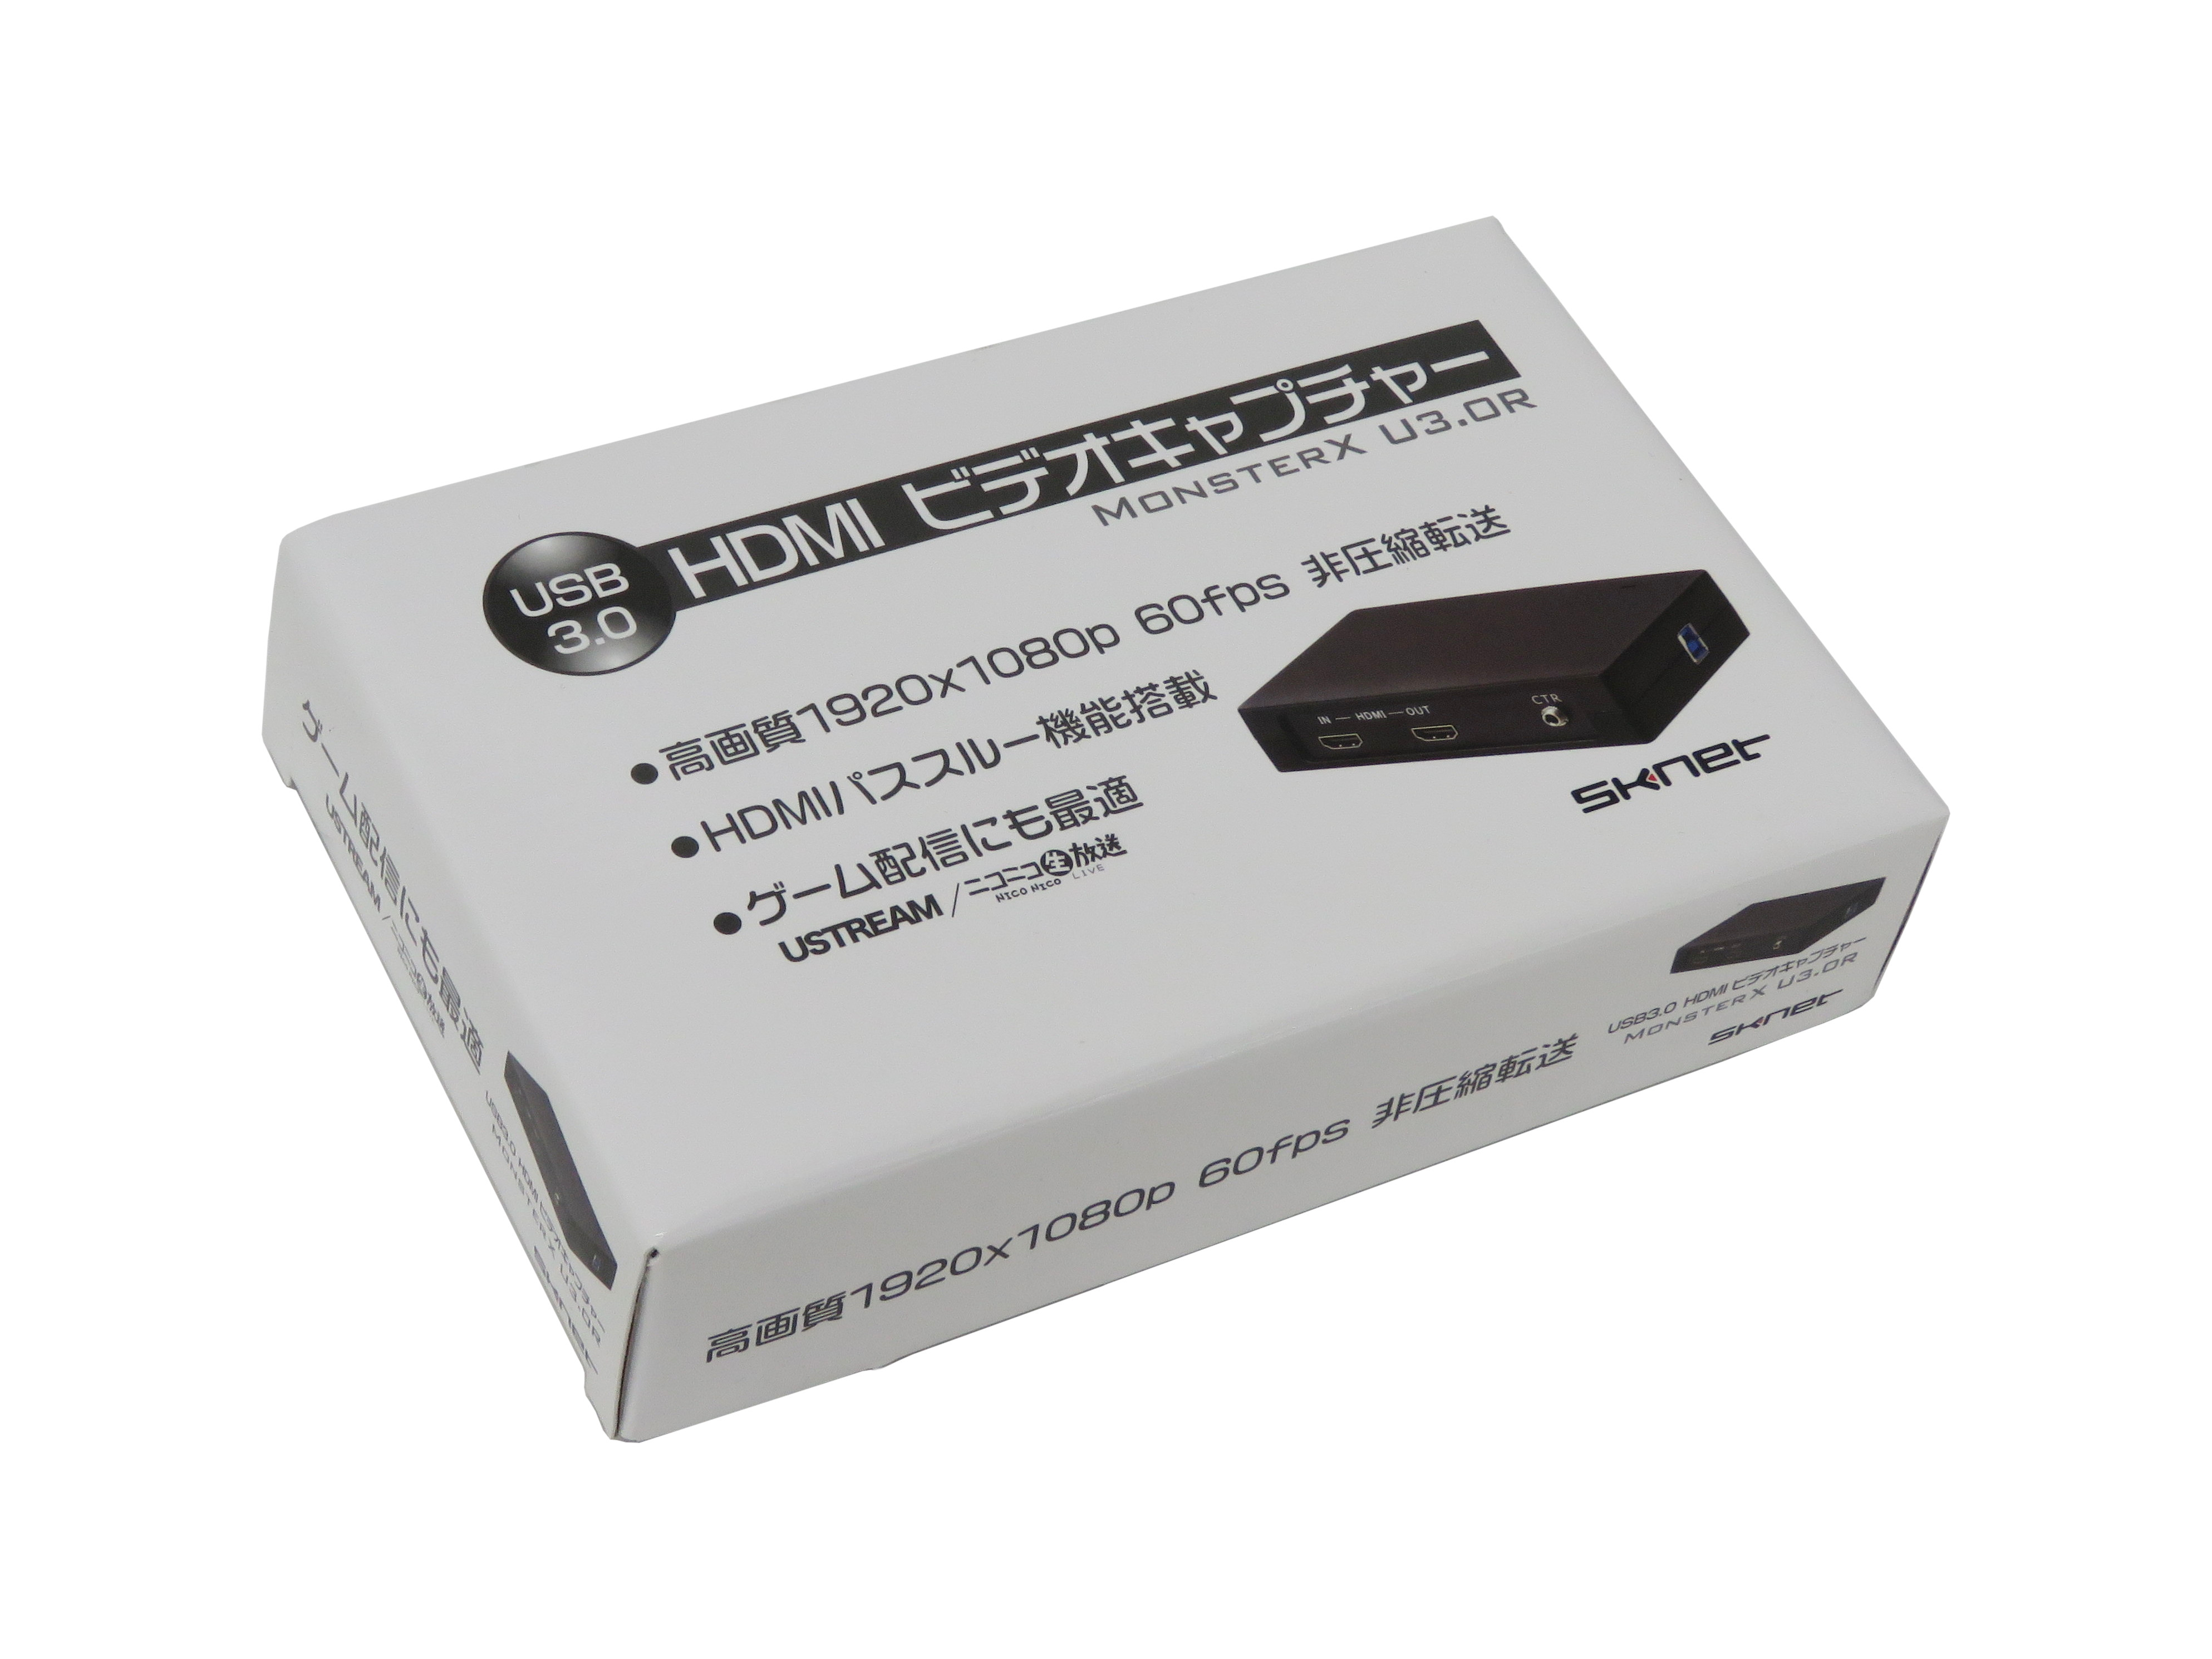 【sknet】MONSTERX U3.OR HDMIビデオキャプチャー